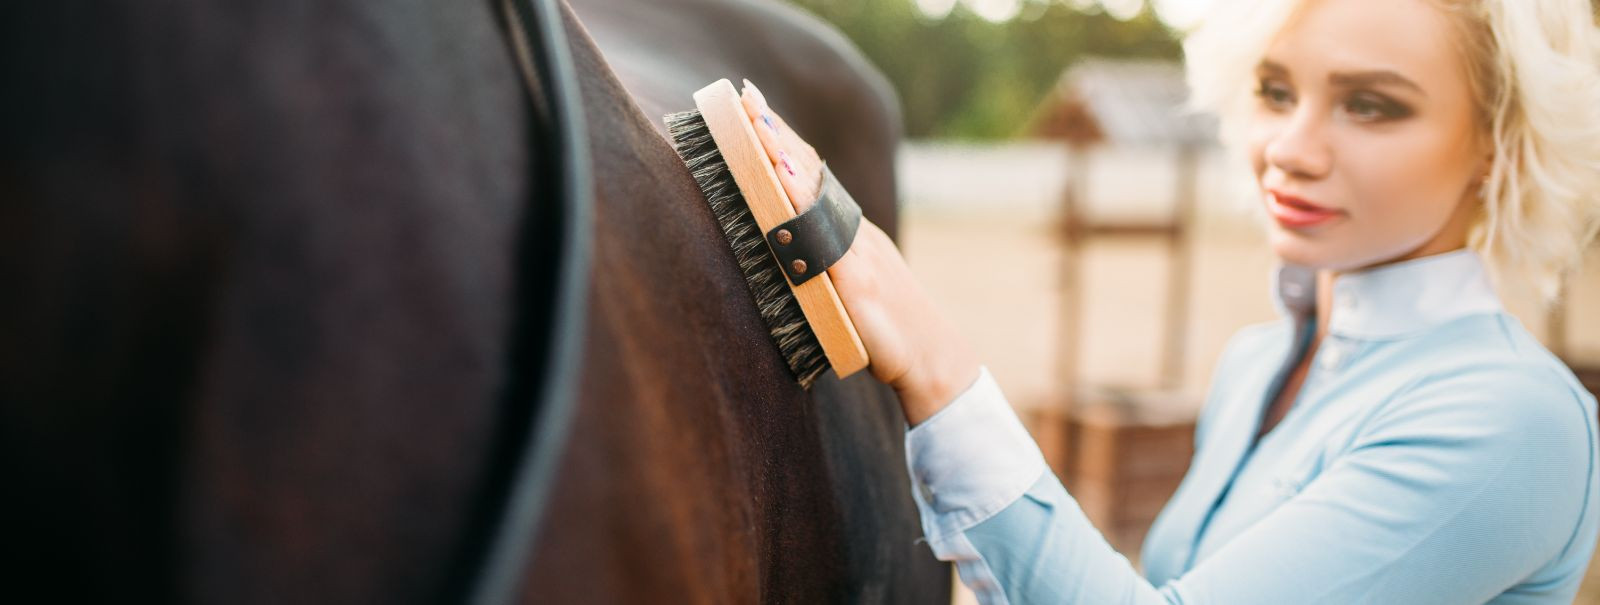 Hobuste hooldamine ei ole ainult hobuse hea väljanägemise tagamine; see on hobusehoolduse põhiline aspekt, mis edendab tervist, võimaldab regulaarseid terviseko